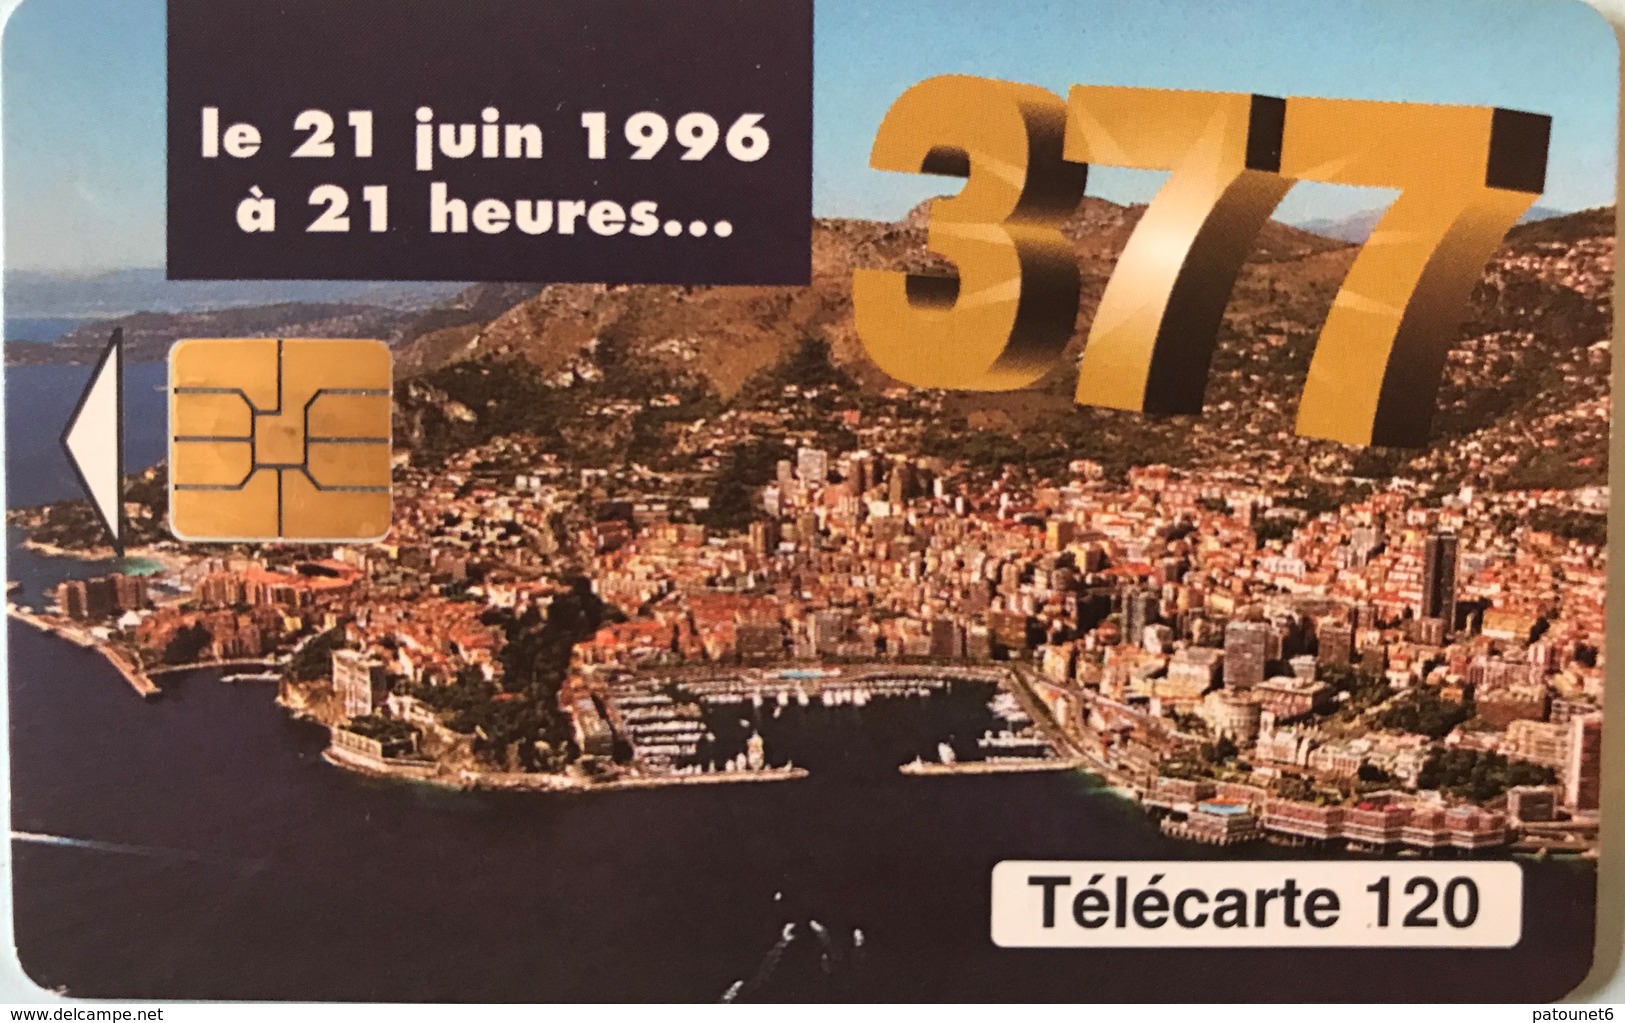 MONACO  -  Phonecard  -  MF 42  -  377 Changement De Numérotation  -  120 Unités - Monaco